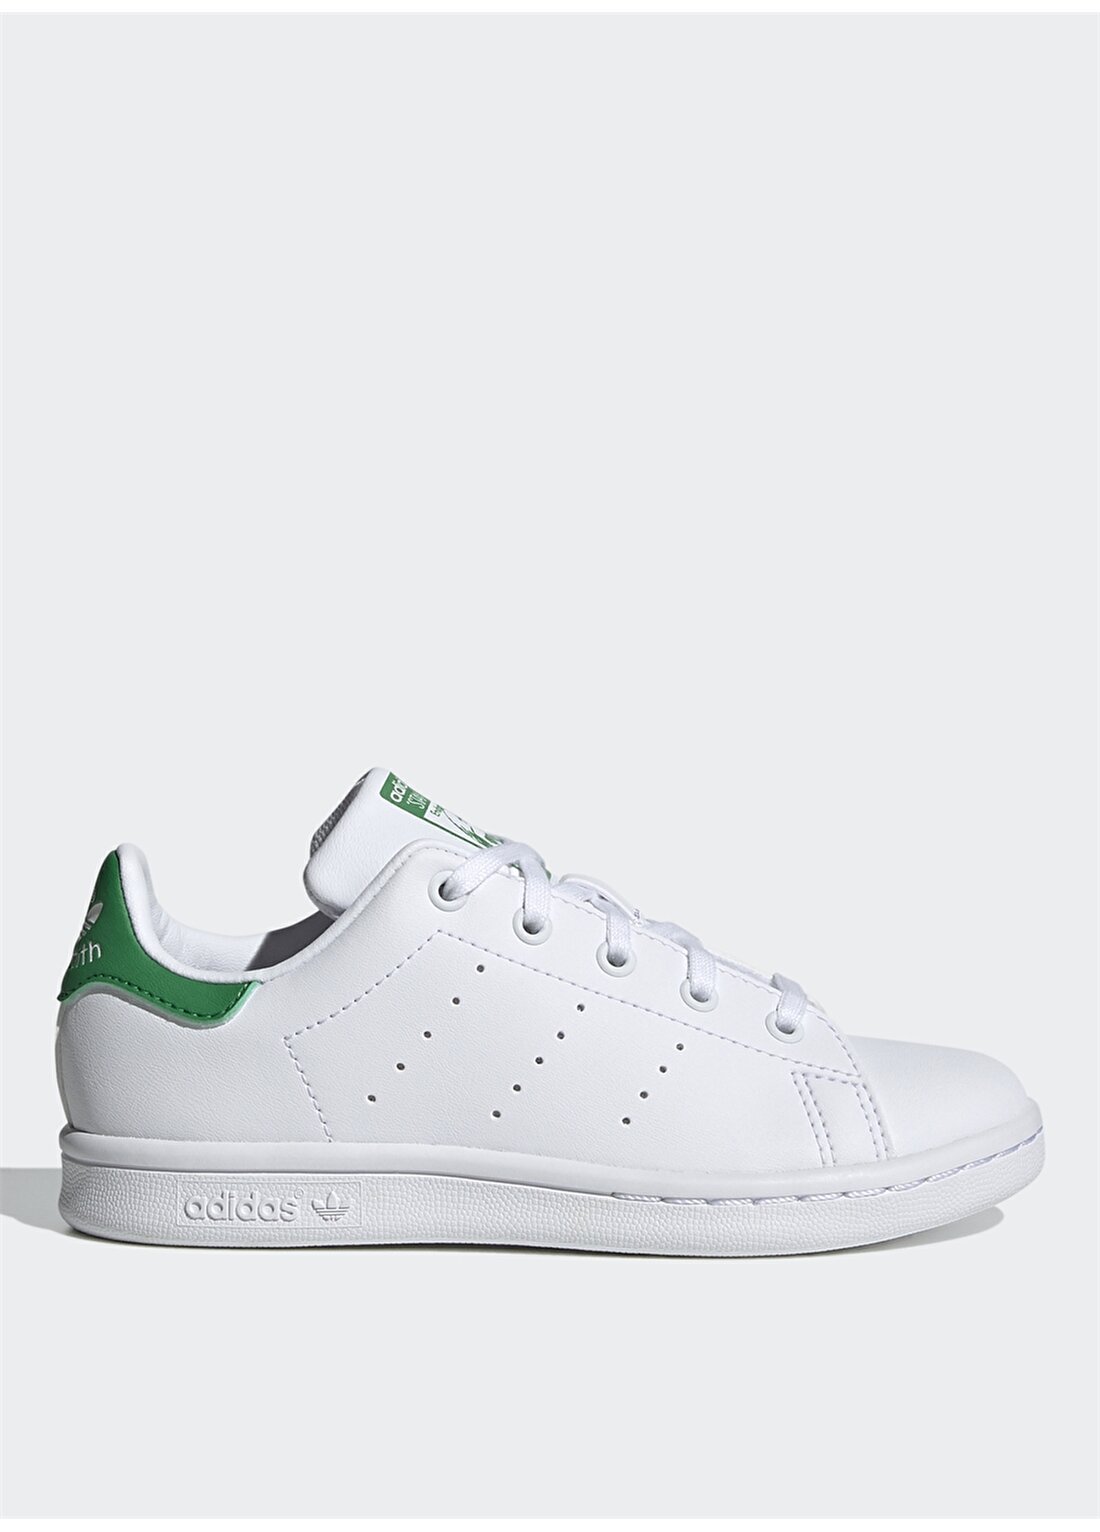 Adidas Beyaz - Yeşil Erkek Çocuk Yürüyüş Ayakkabısı FX7524 STAN SMITH C